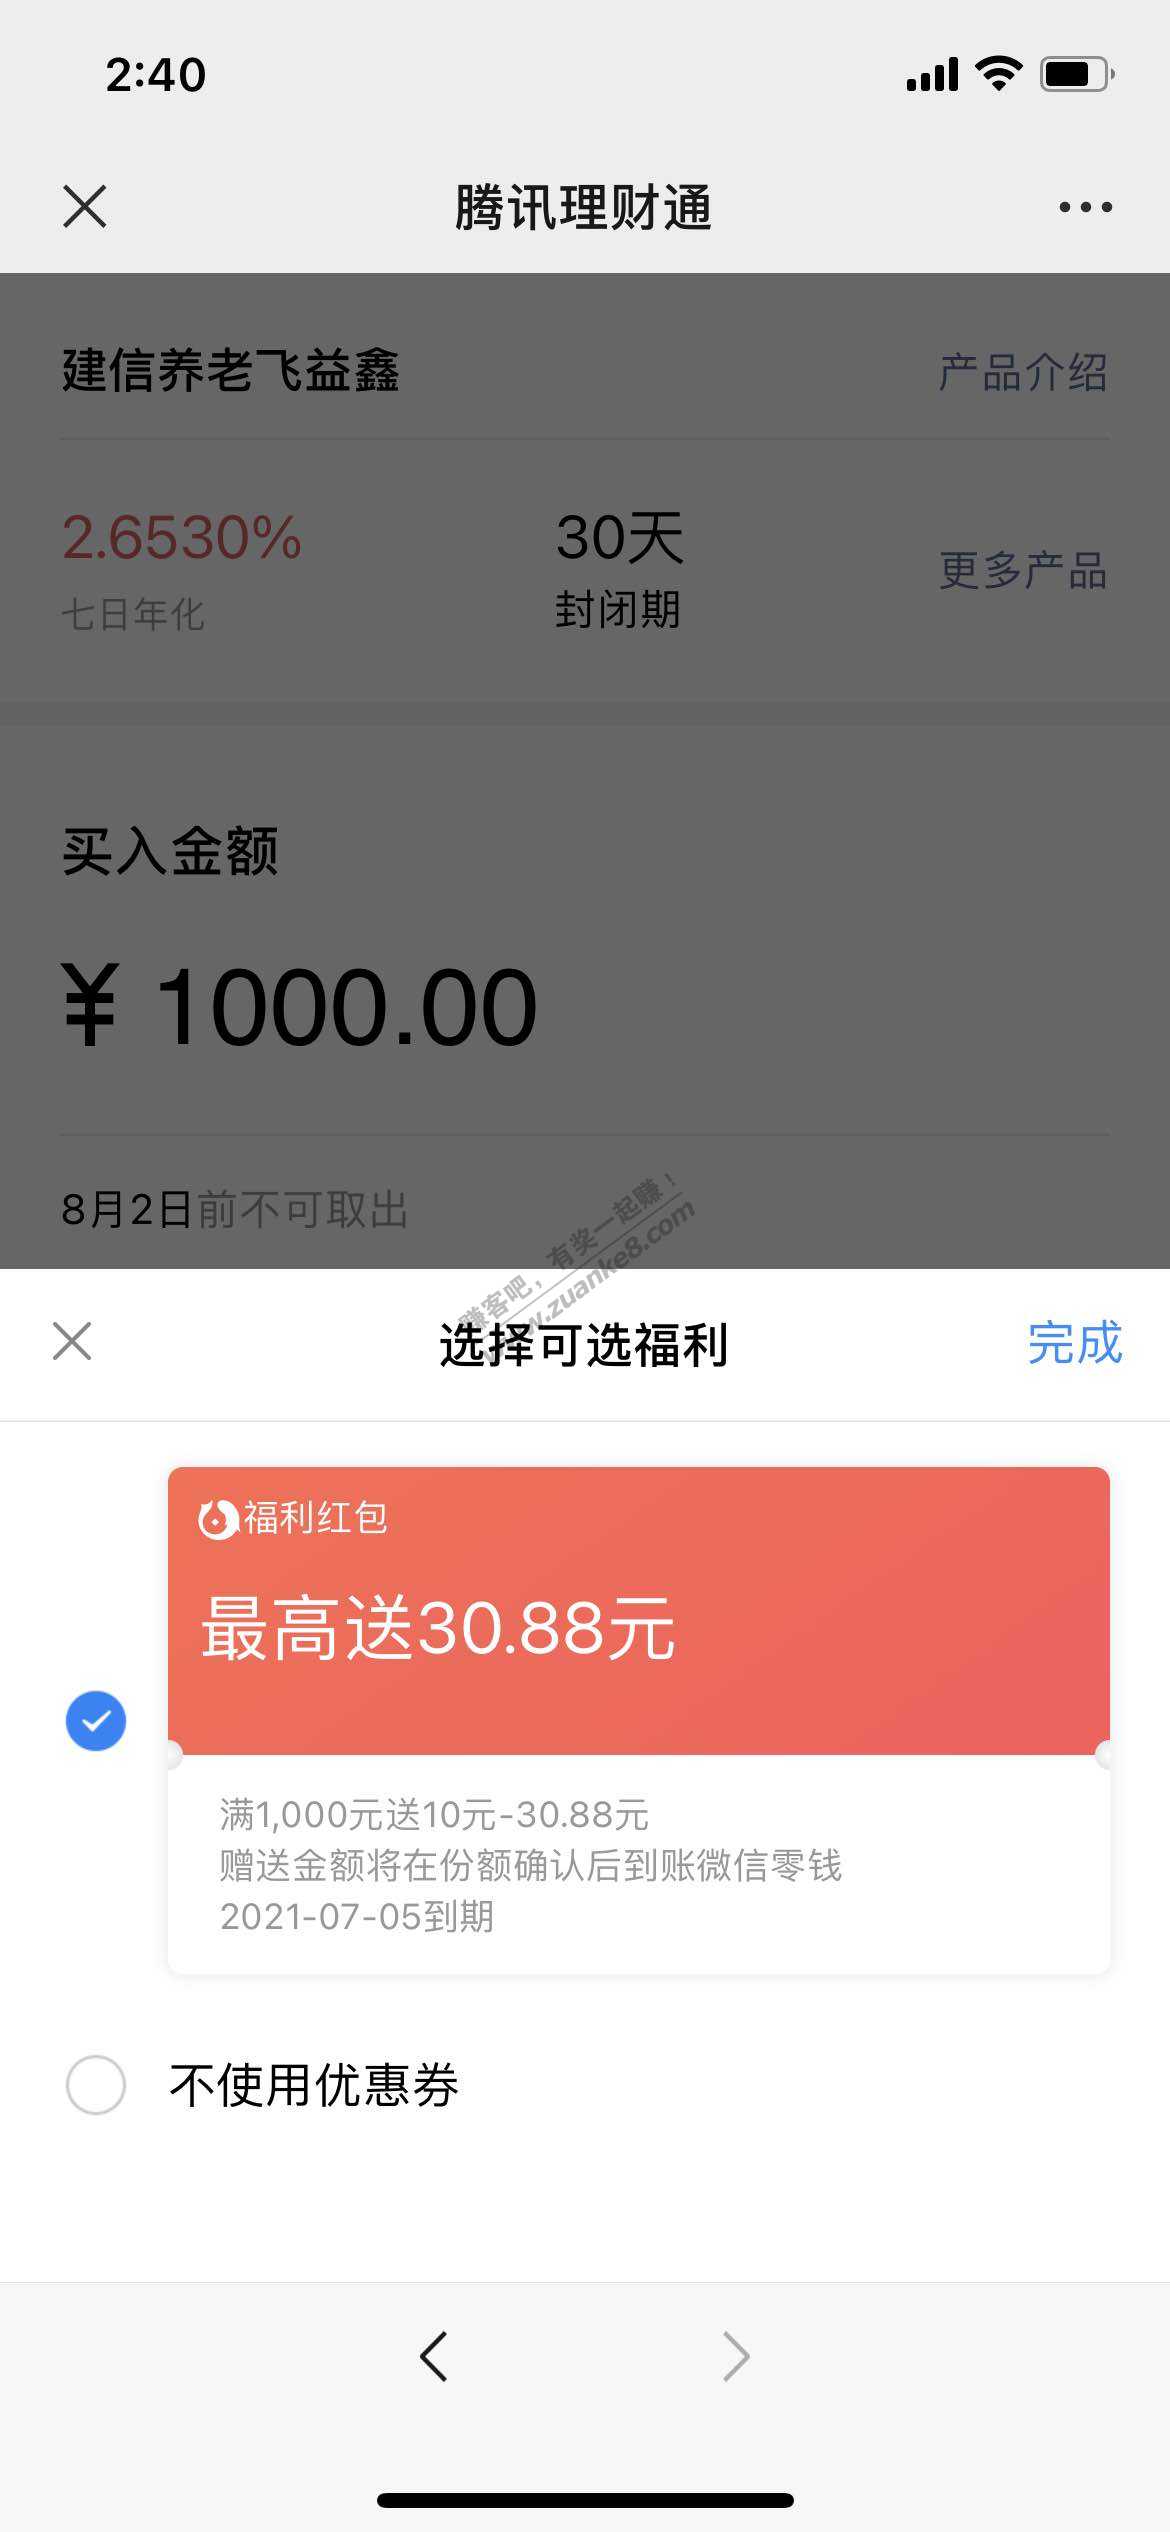 V.x理财通弹窗福利红包10元-30.88-惠小助(52huixz.com)